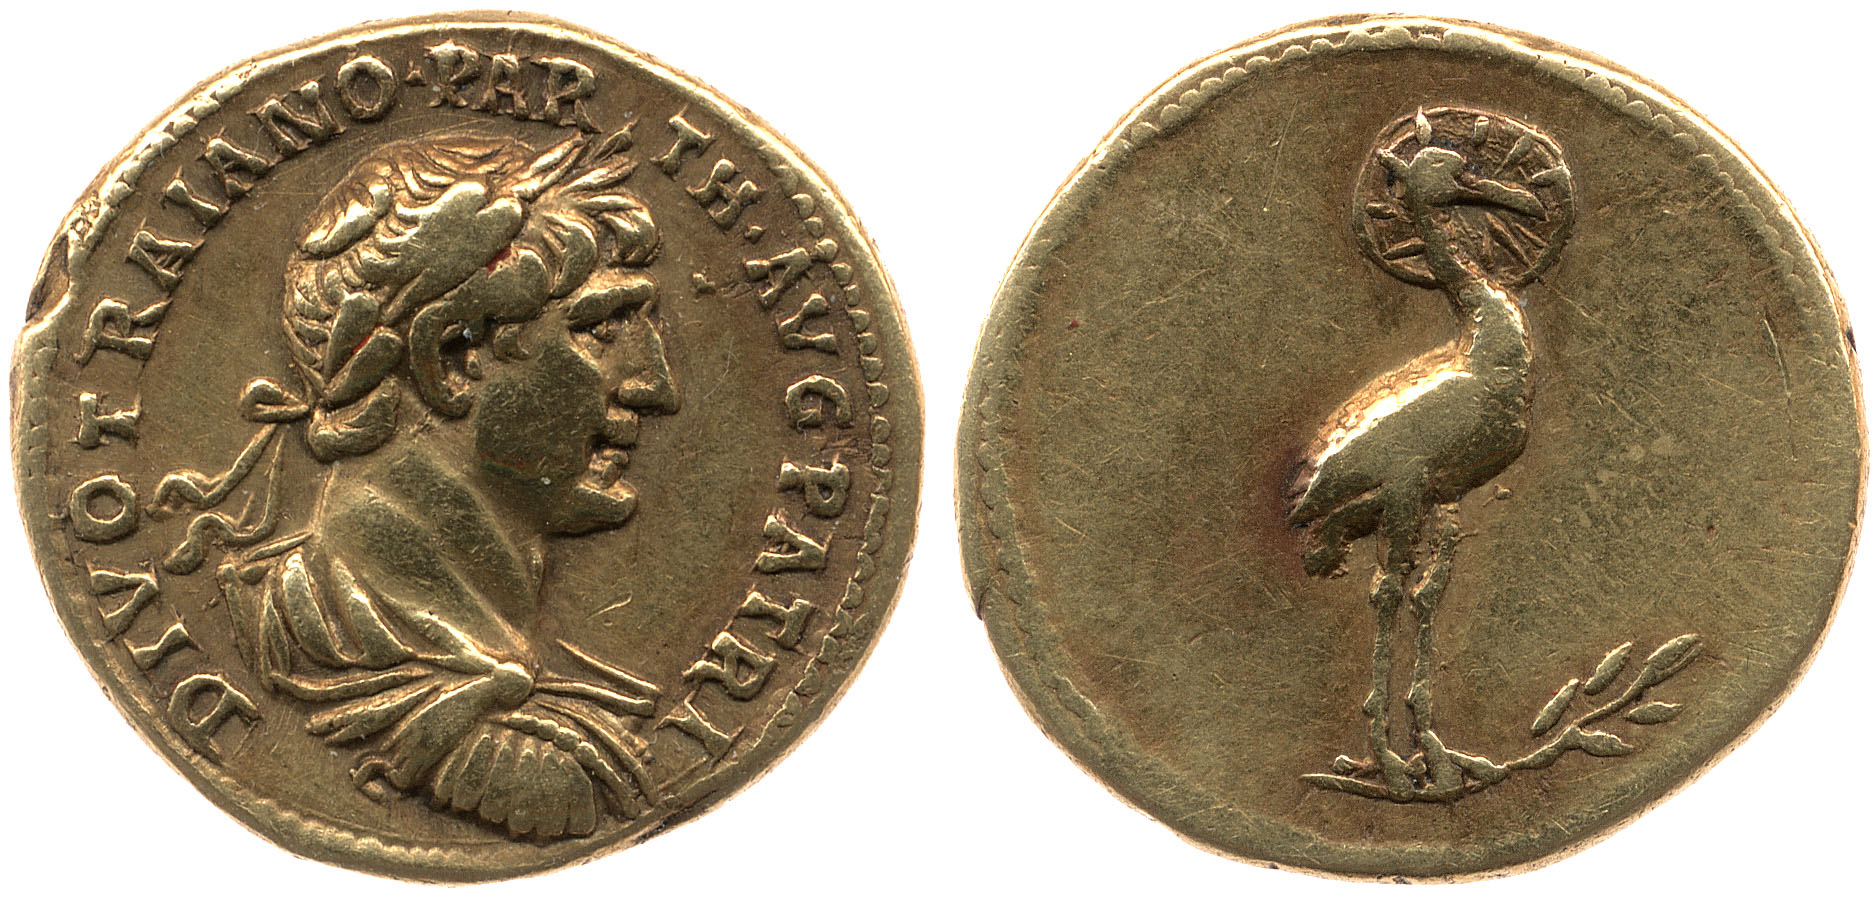 Monnaie au phénix de l'empereur Hadrien